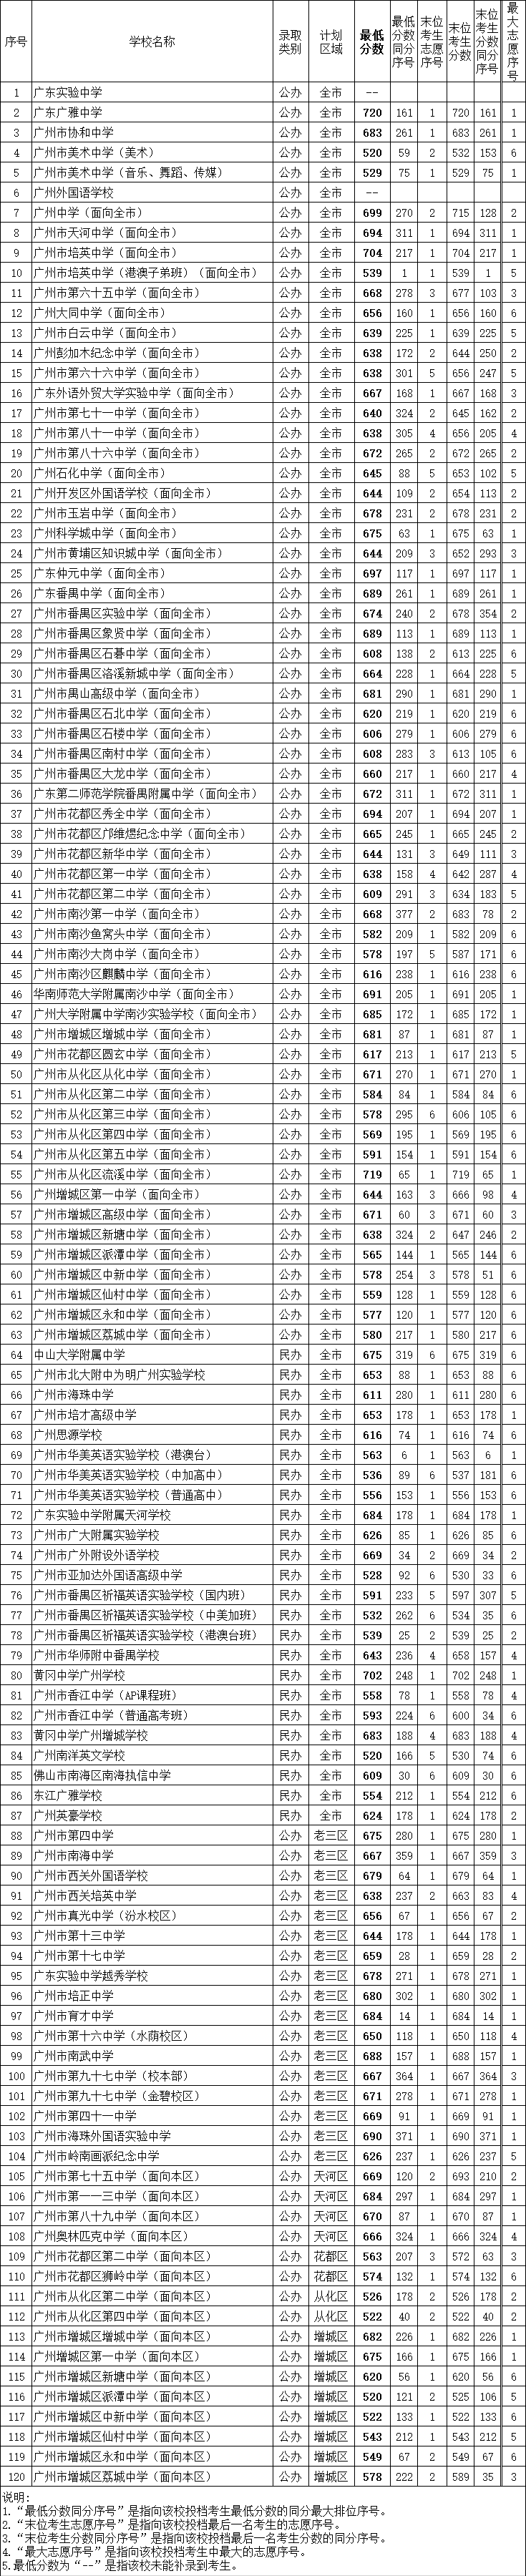 2020年广州市普通高中学校录取分数.png